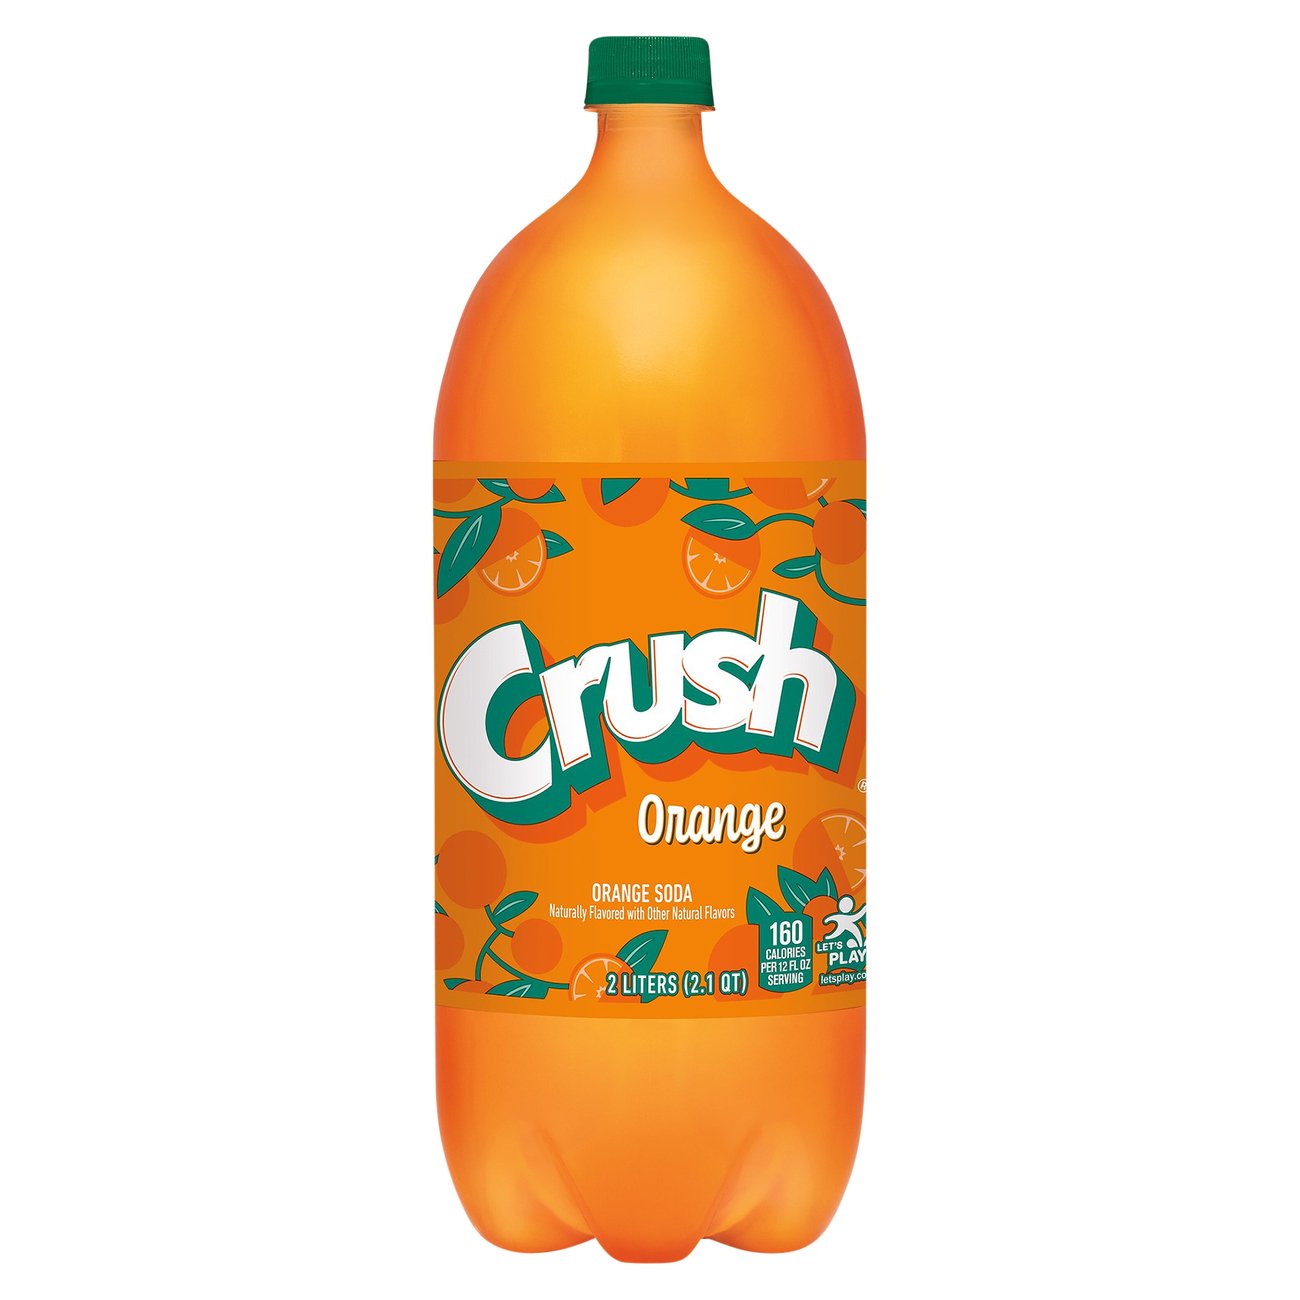 Fanta Orange Soda Bottle, 2 Liters